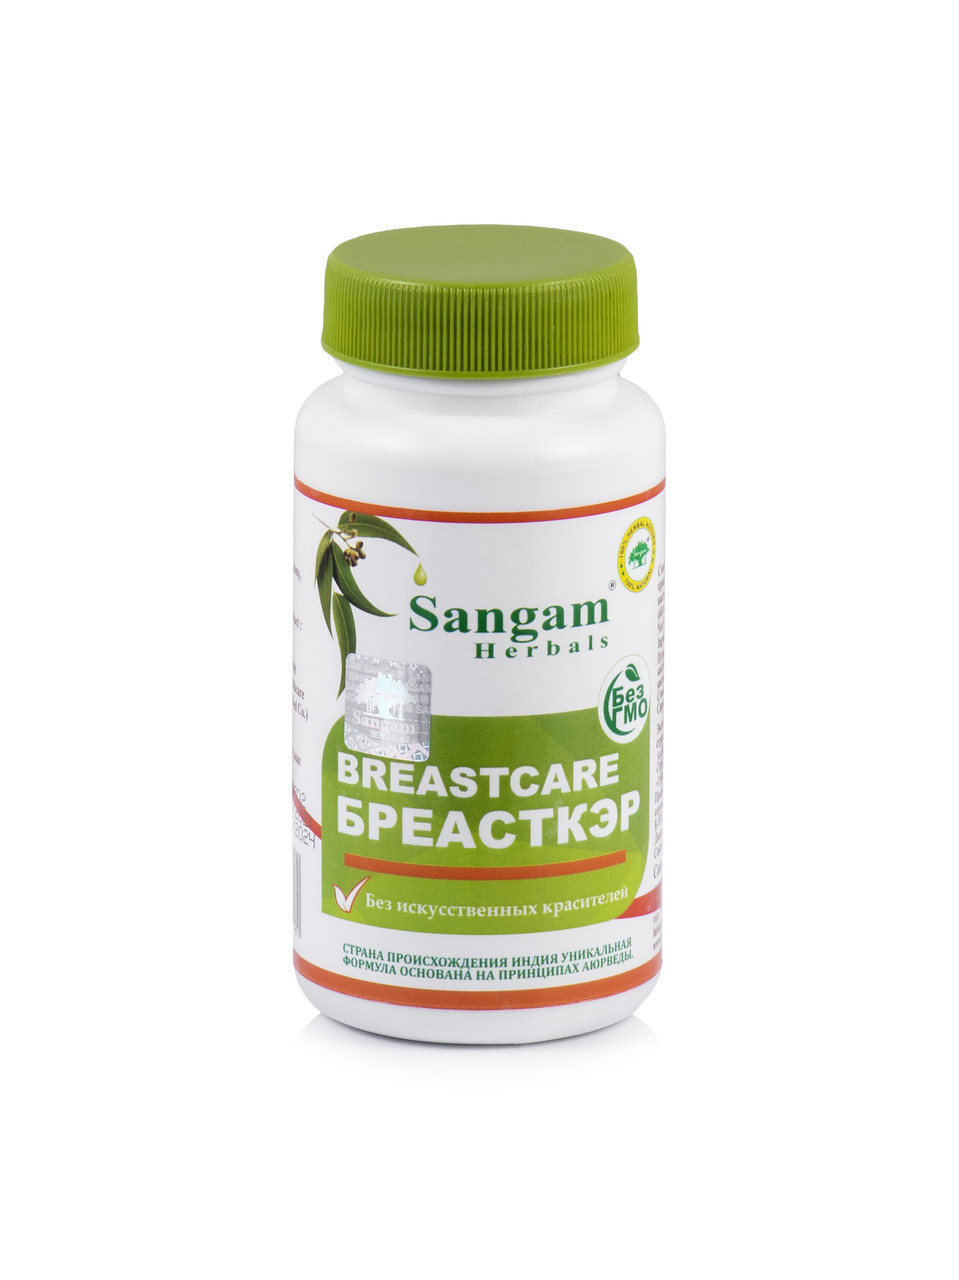 Бреаст кэр 60 таб, Sangam Herbals, для нормального функционирования тканей молочных желез